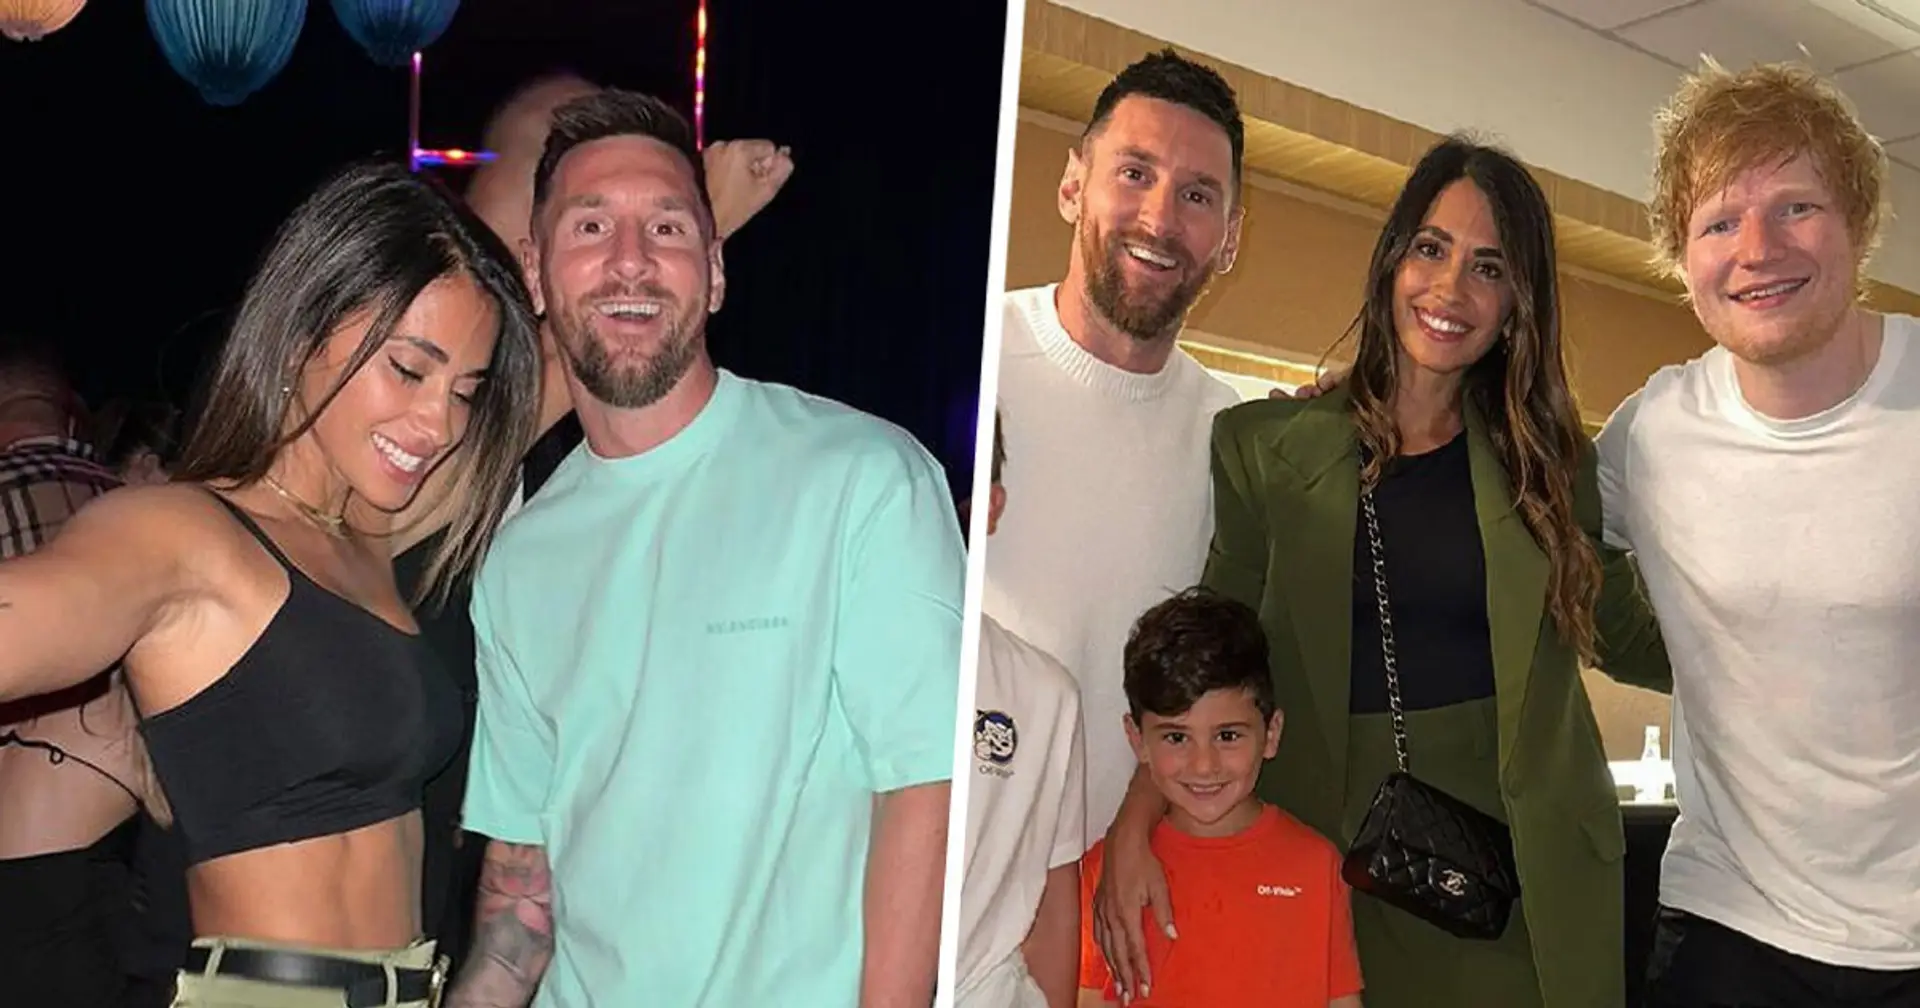 Leo Messi in Miami: hat eine Villa gekauft, verbringt Zeit mit den Beckhams und Ed Sheeran, macht Fotos am Strand